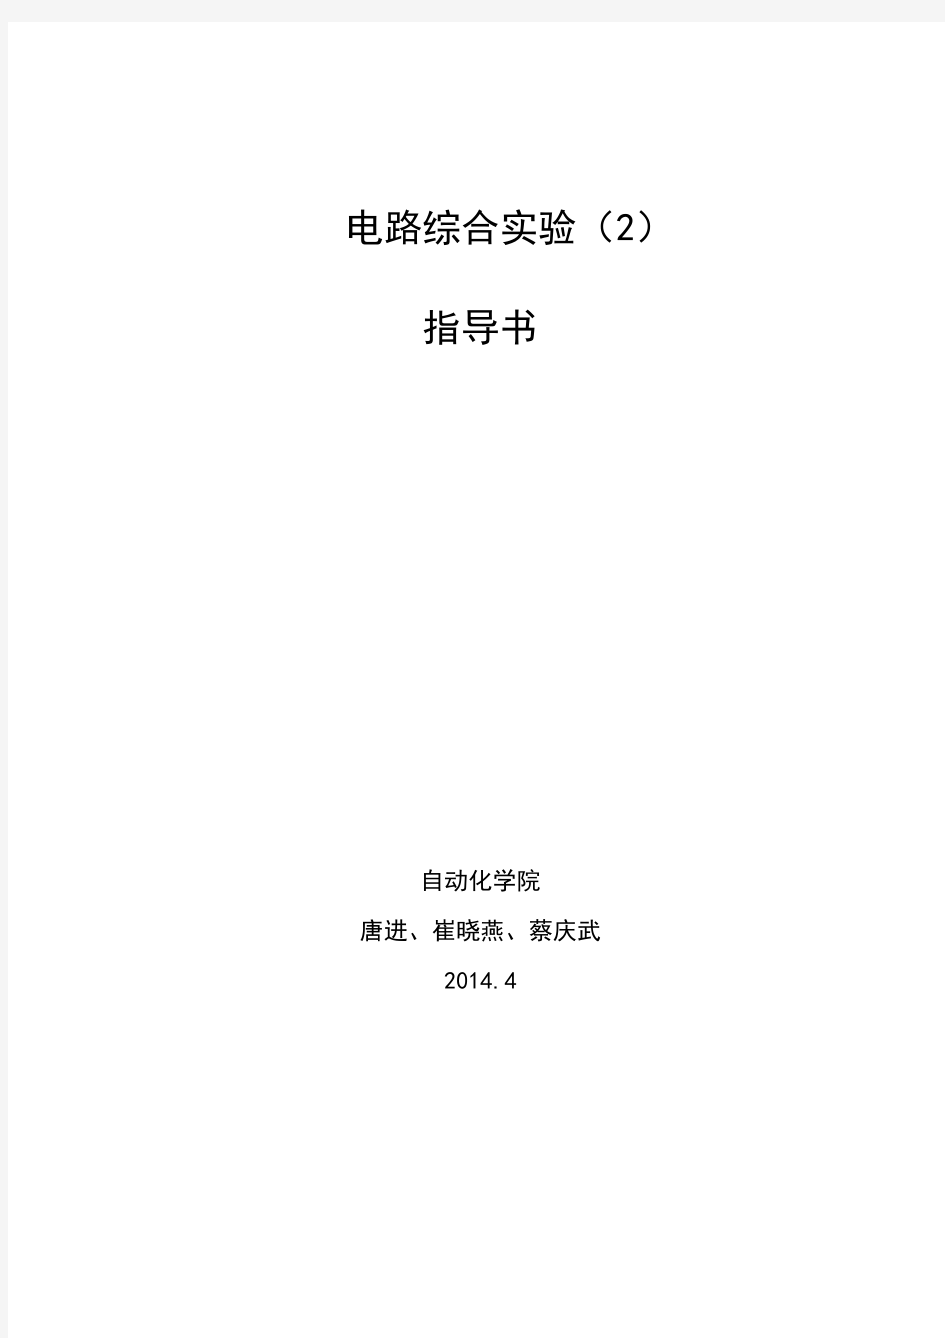 电路综合试验指导书-YutaoTang